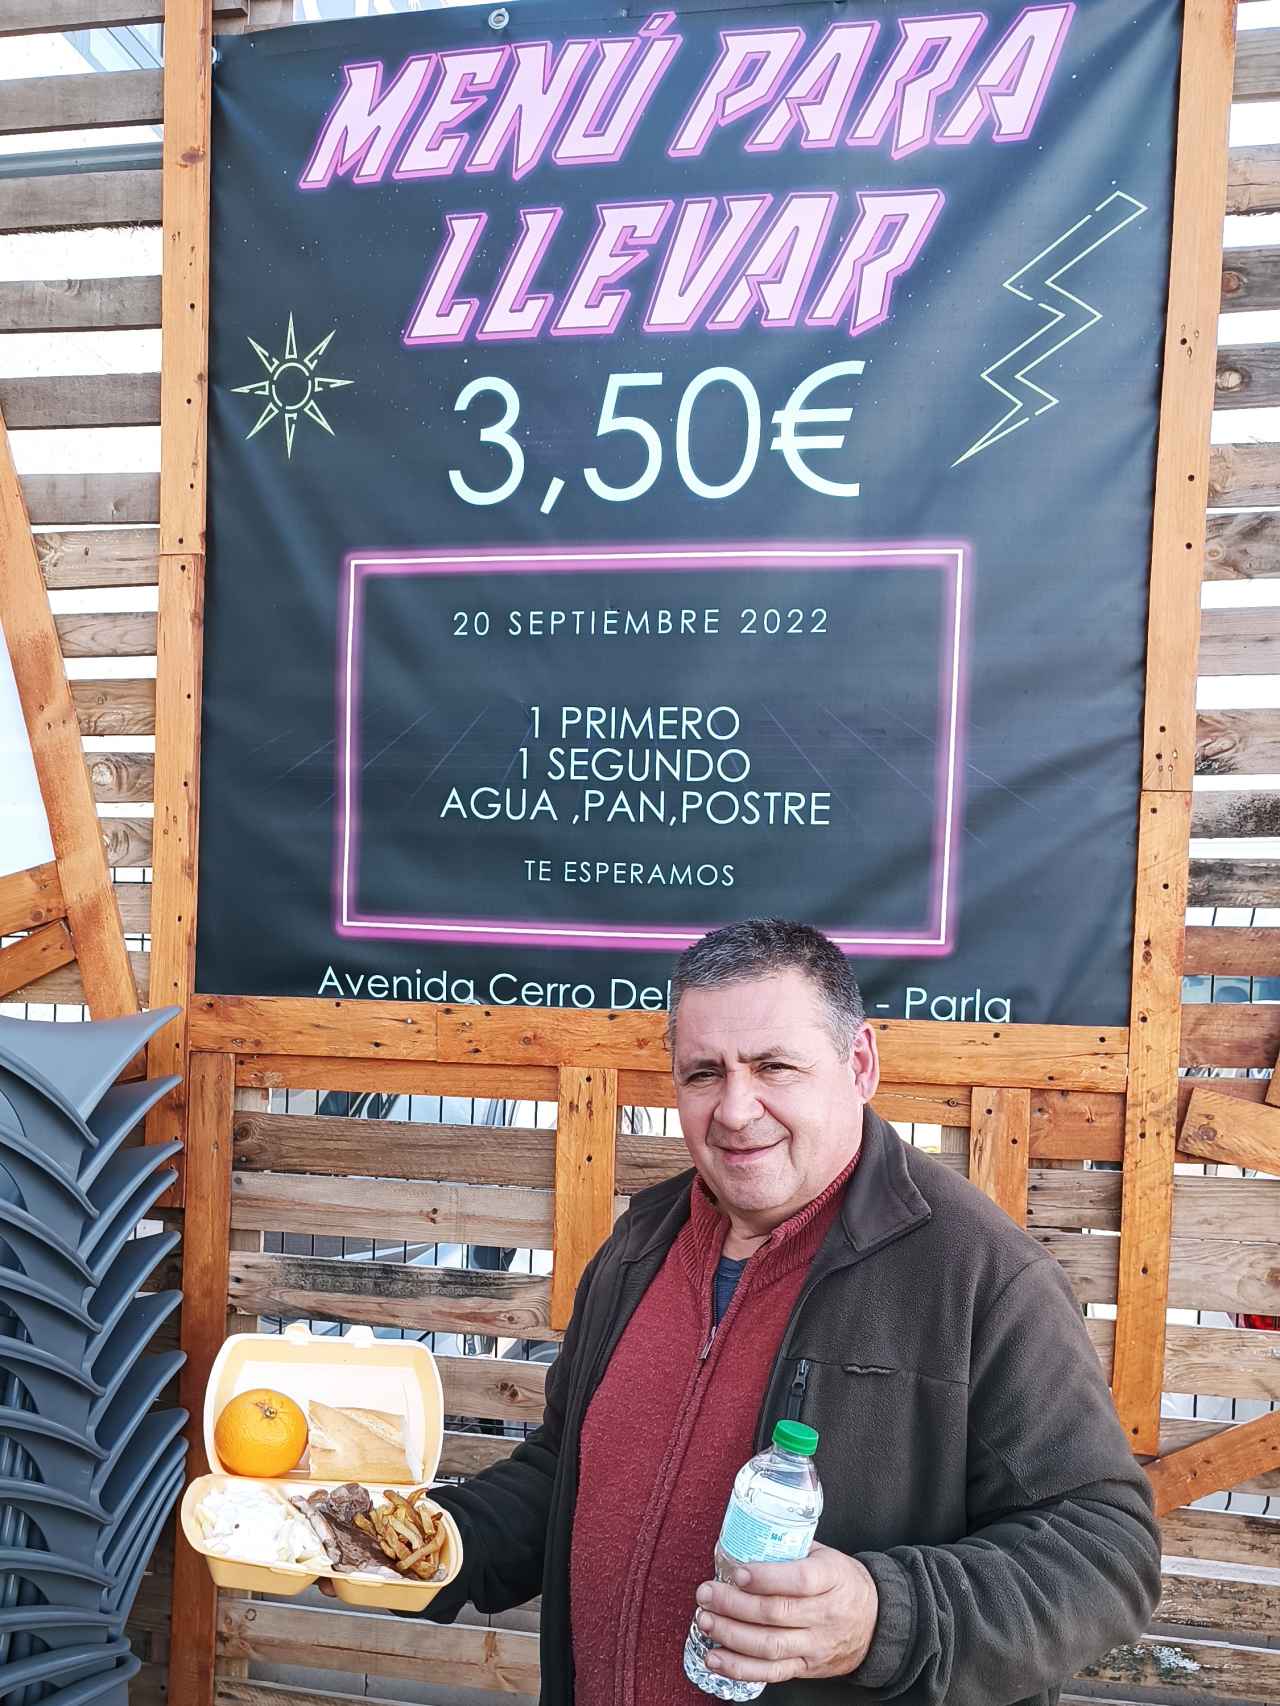 Carlos Moreno, el hostelero detrás de la idea de vender menús del día a 3,50 euros.